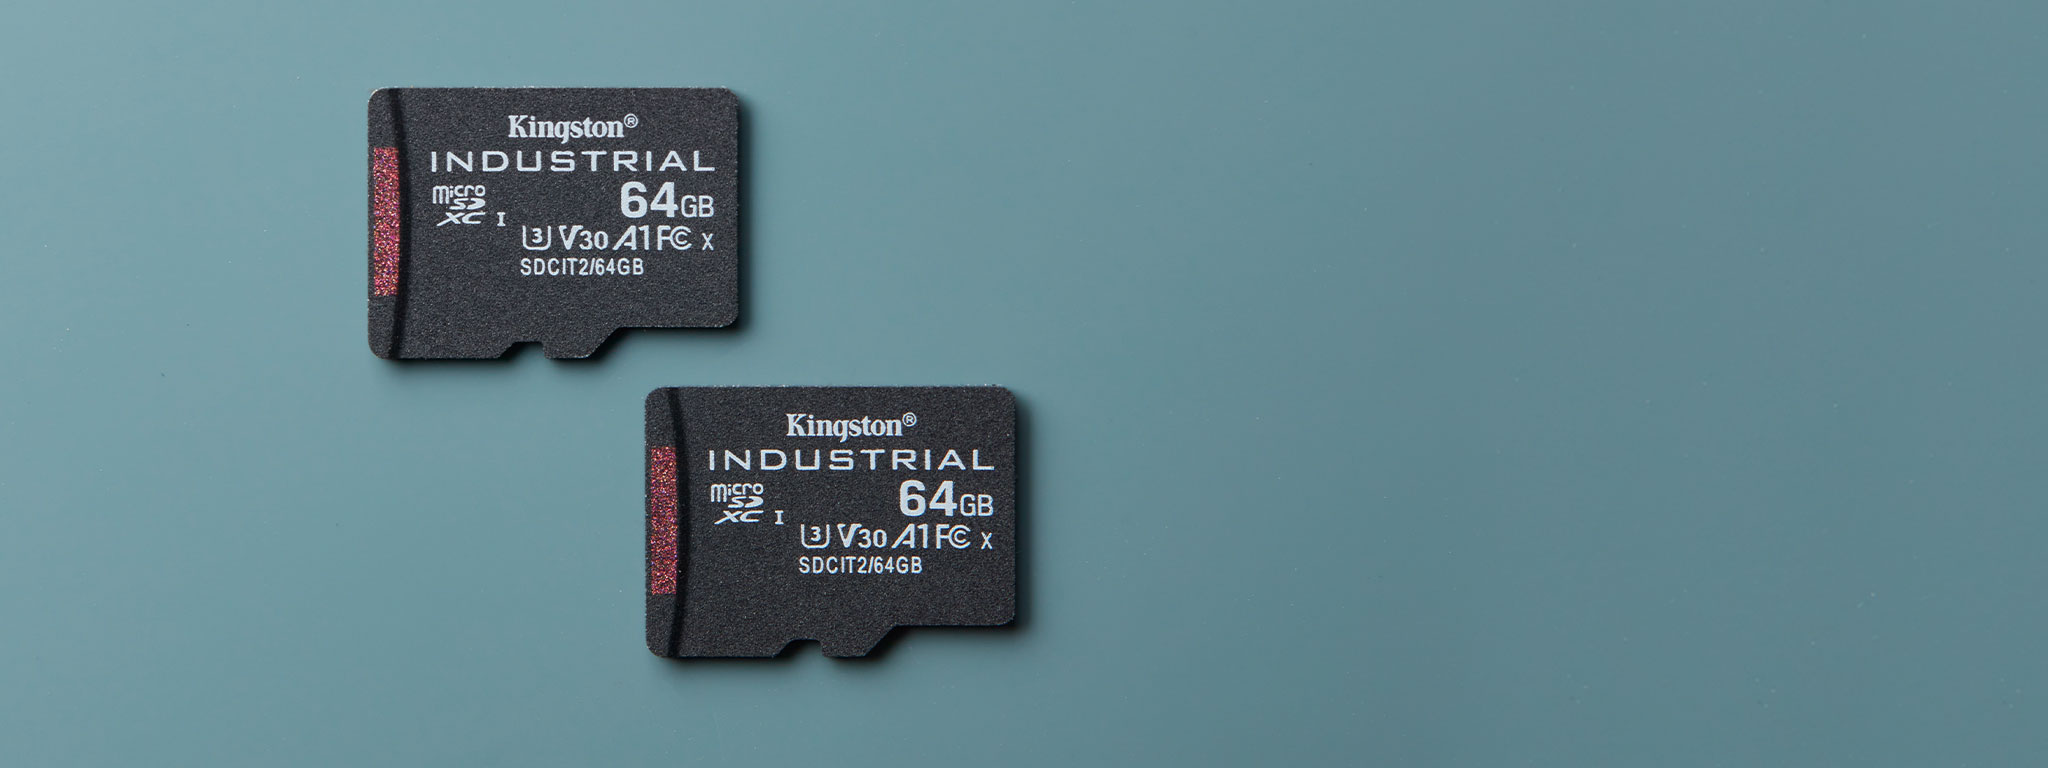 Una coppia di schede Industrial microSD, entrambe con capacità di 64GB, su una superficie blu-verde